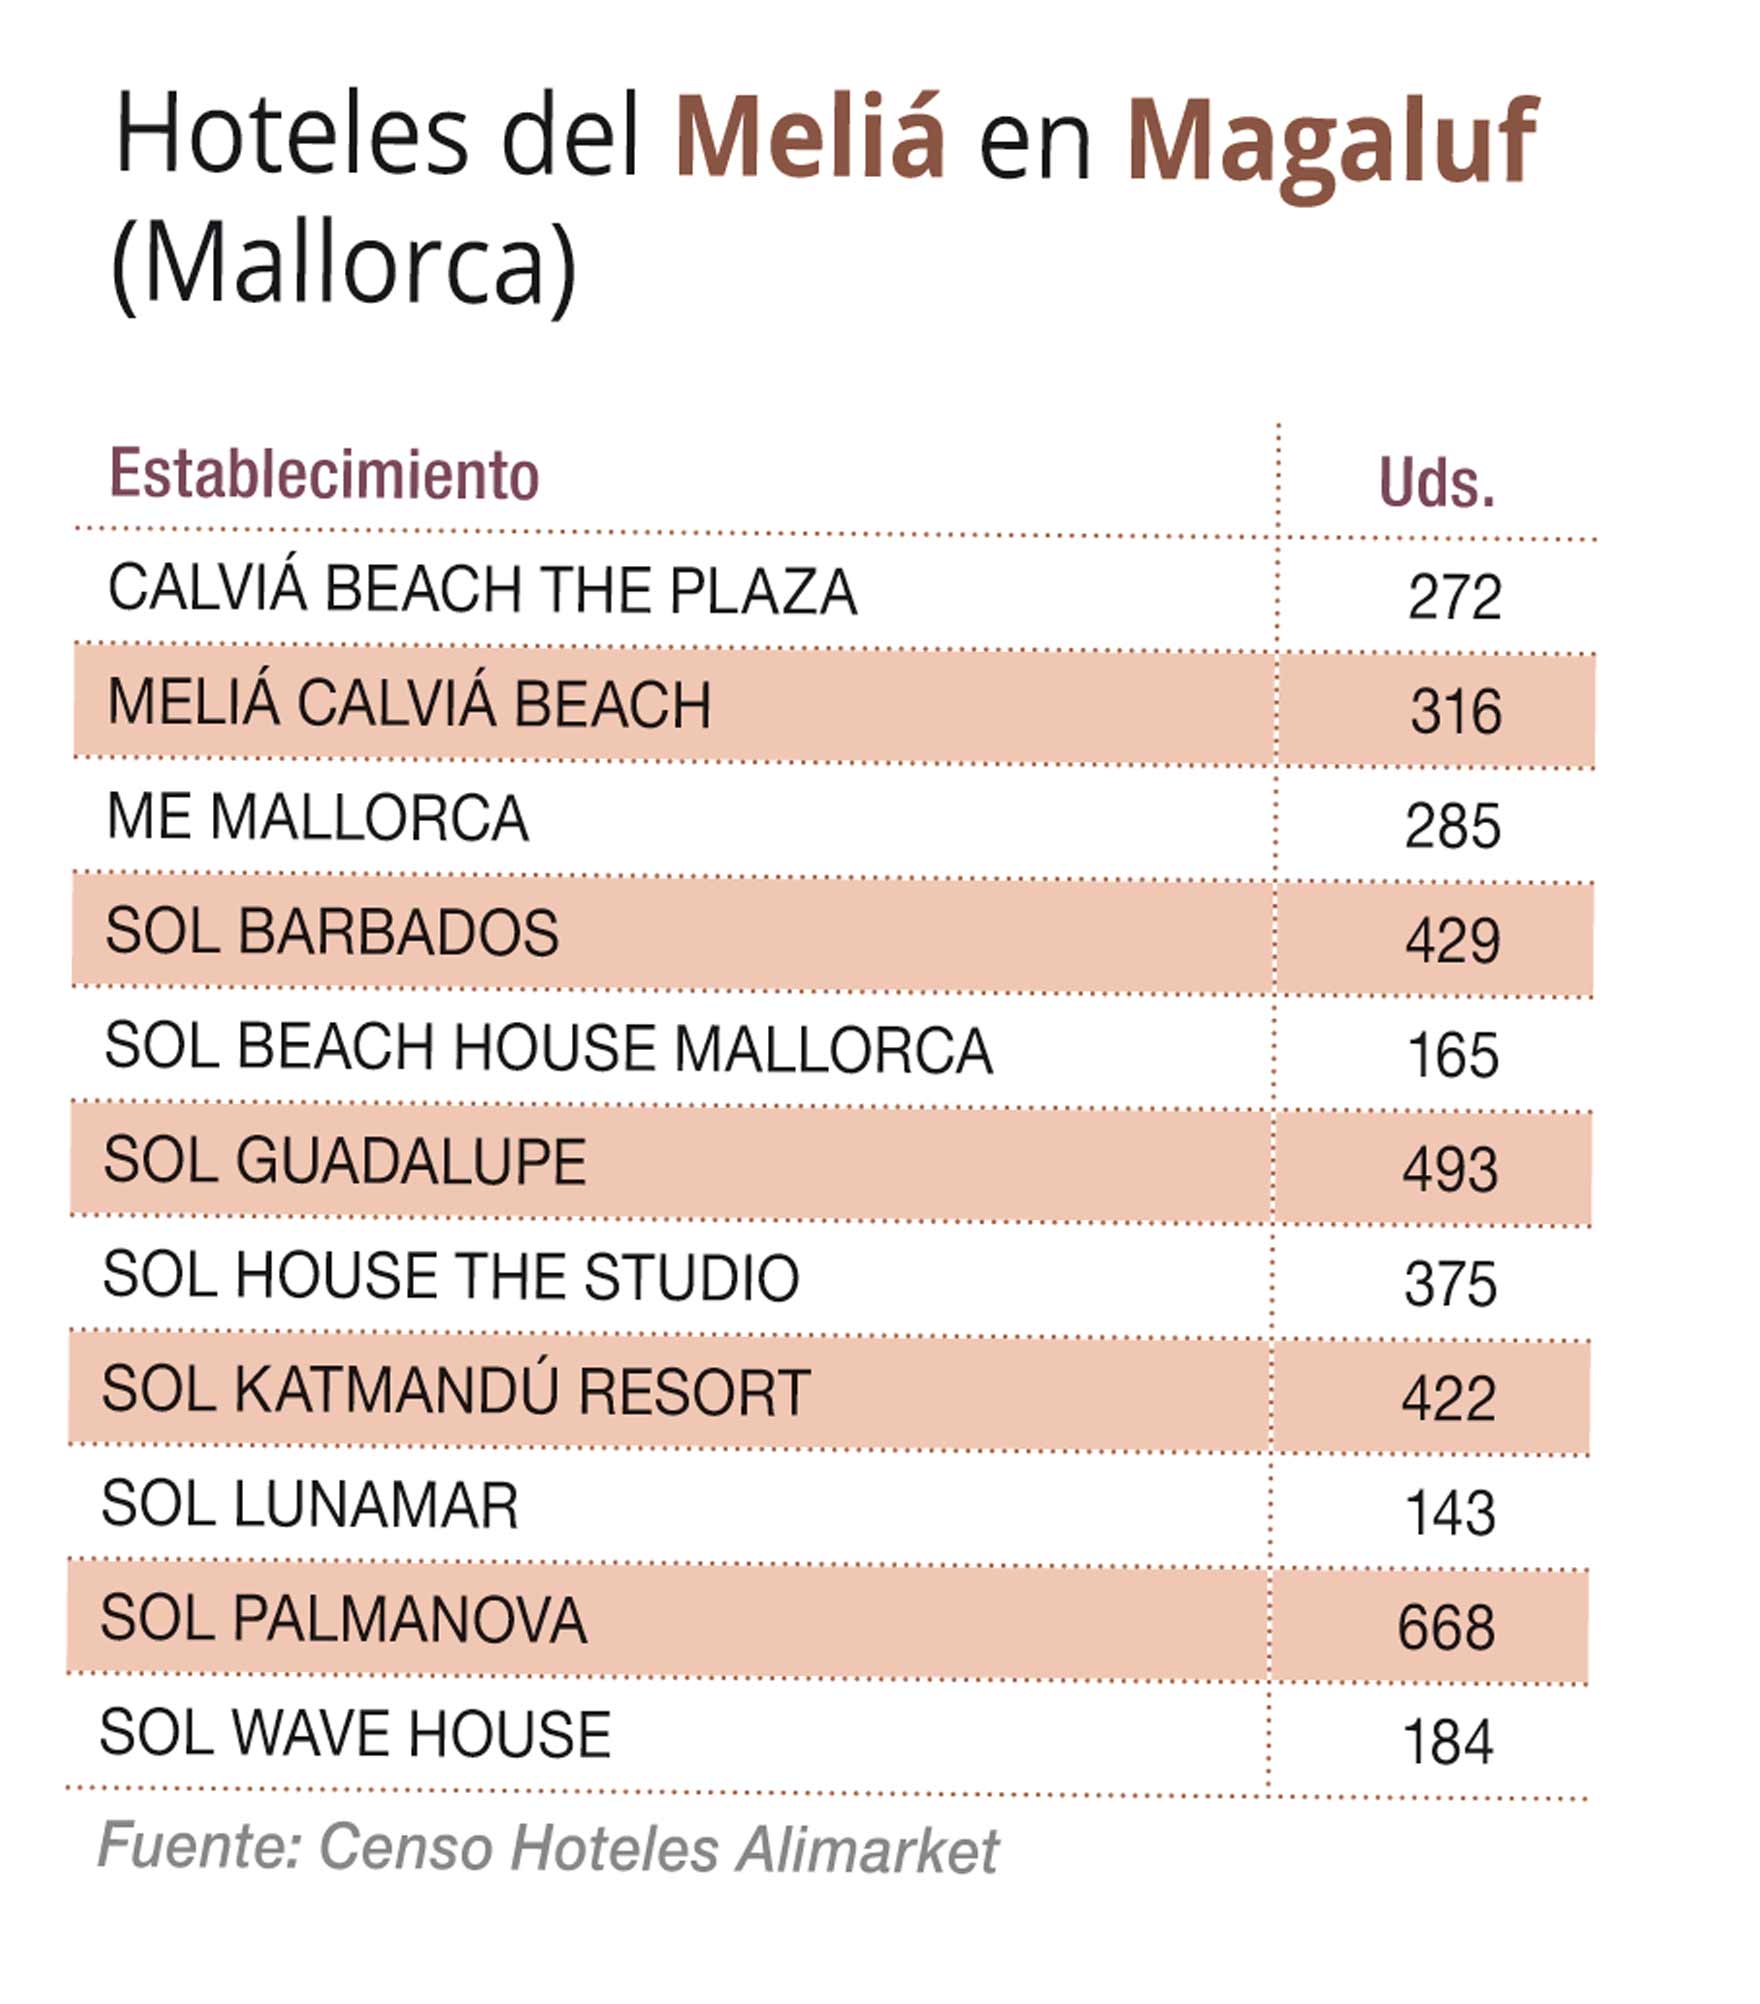 Meliá Hotels da por concluido su proyecto de Magaluf